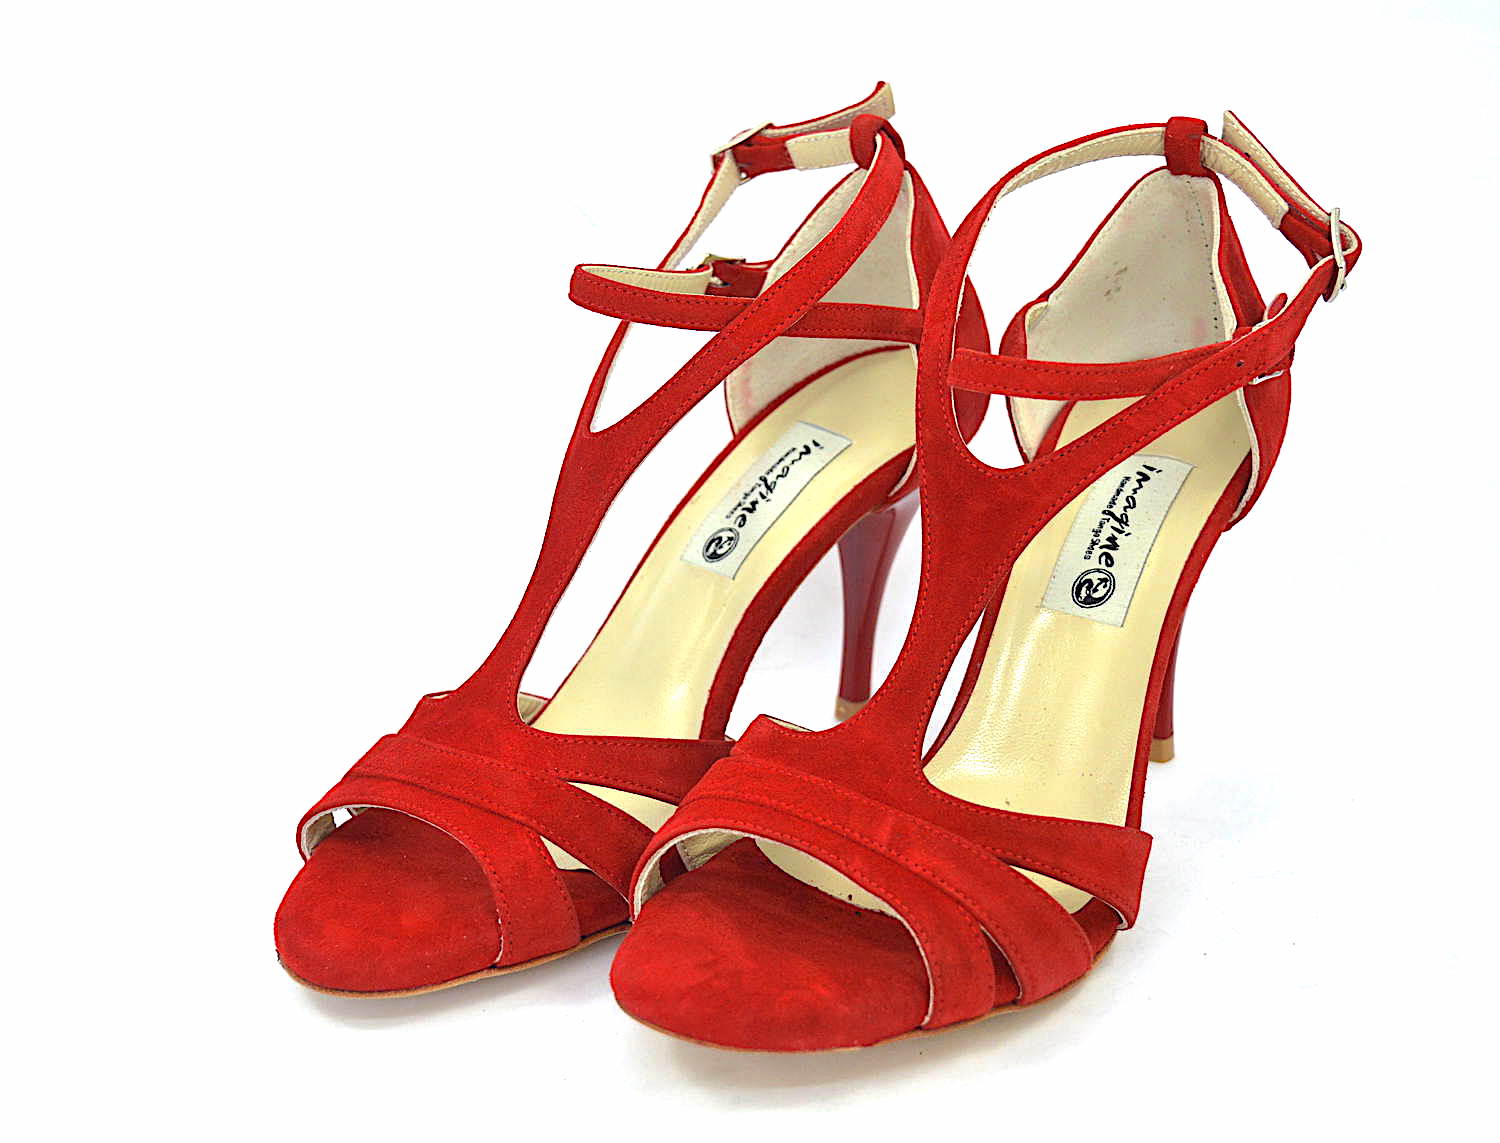 Γυναικείο παπούτσι tango argentino, open toe από εντυπωσιακό κόκκινο σουέντ δέρμα